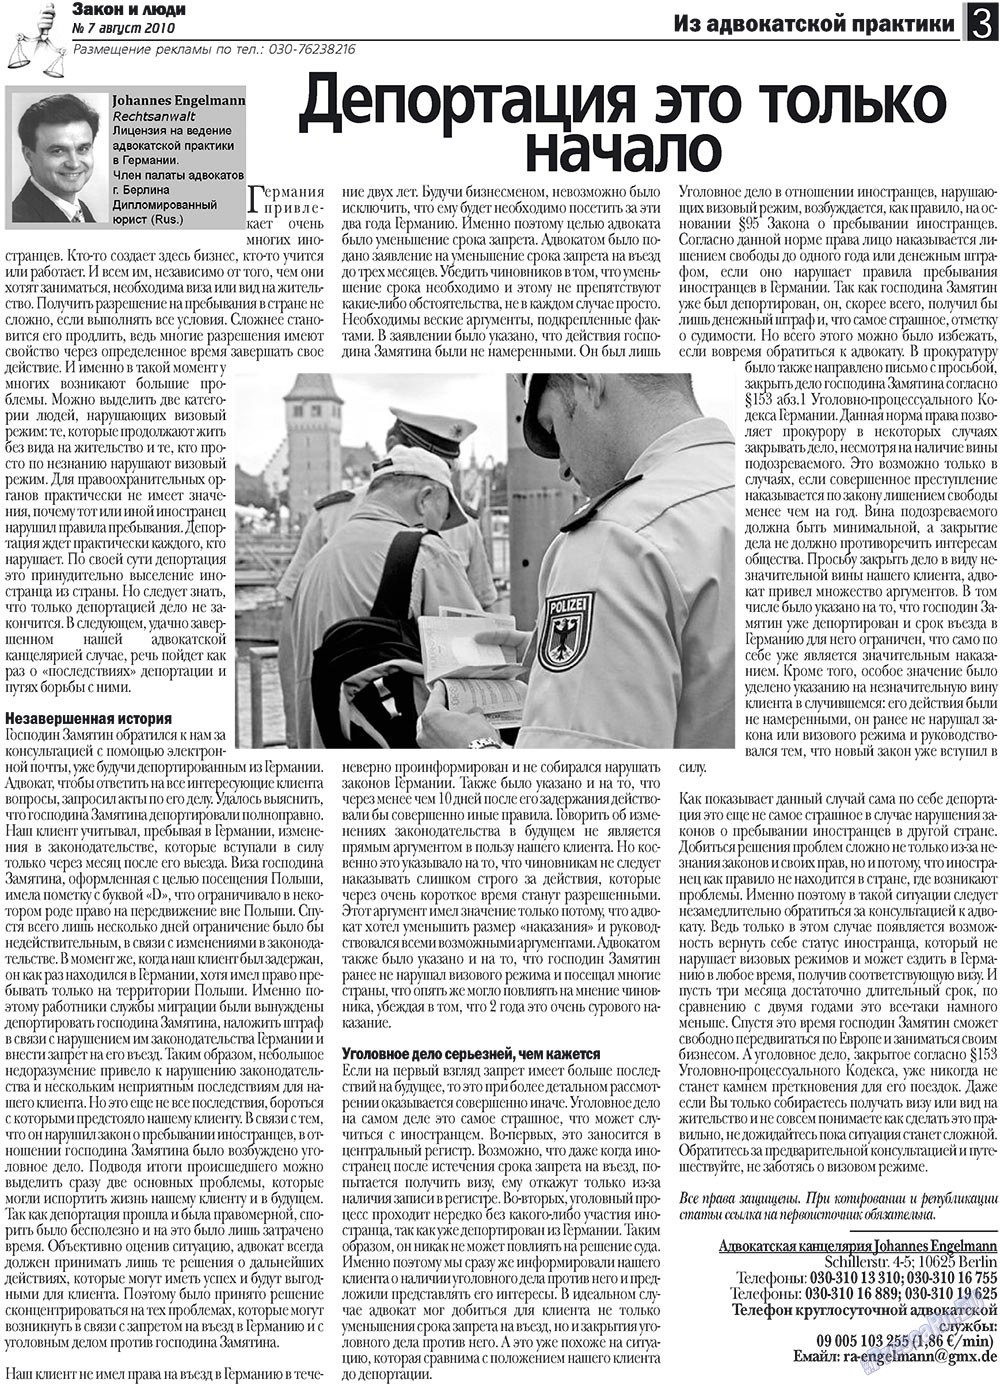 Закон и люди, газета. 2010 №7 стр.3